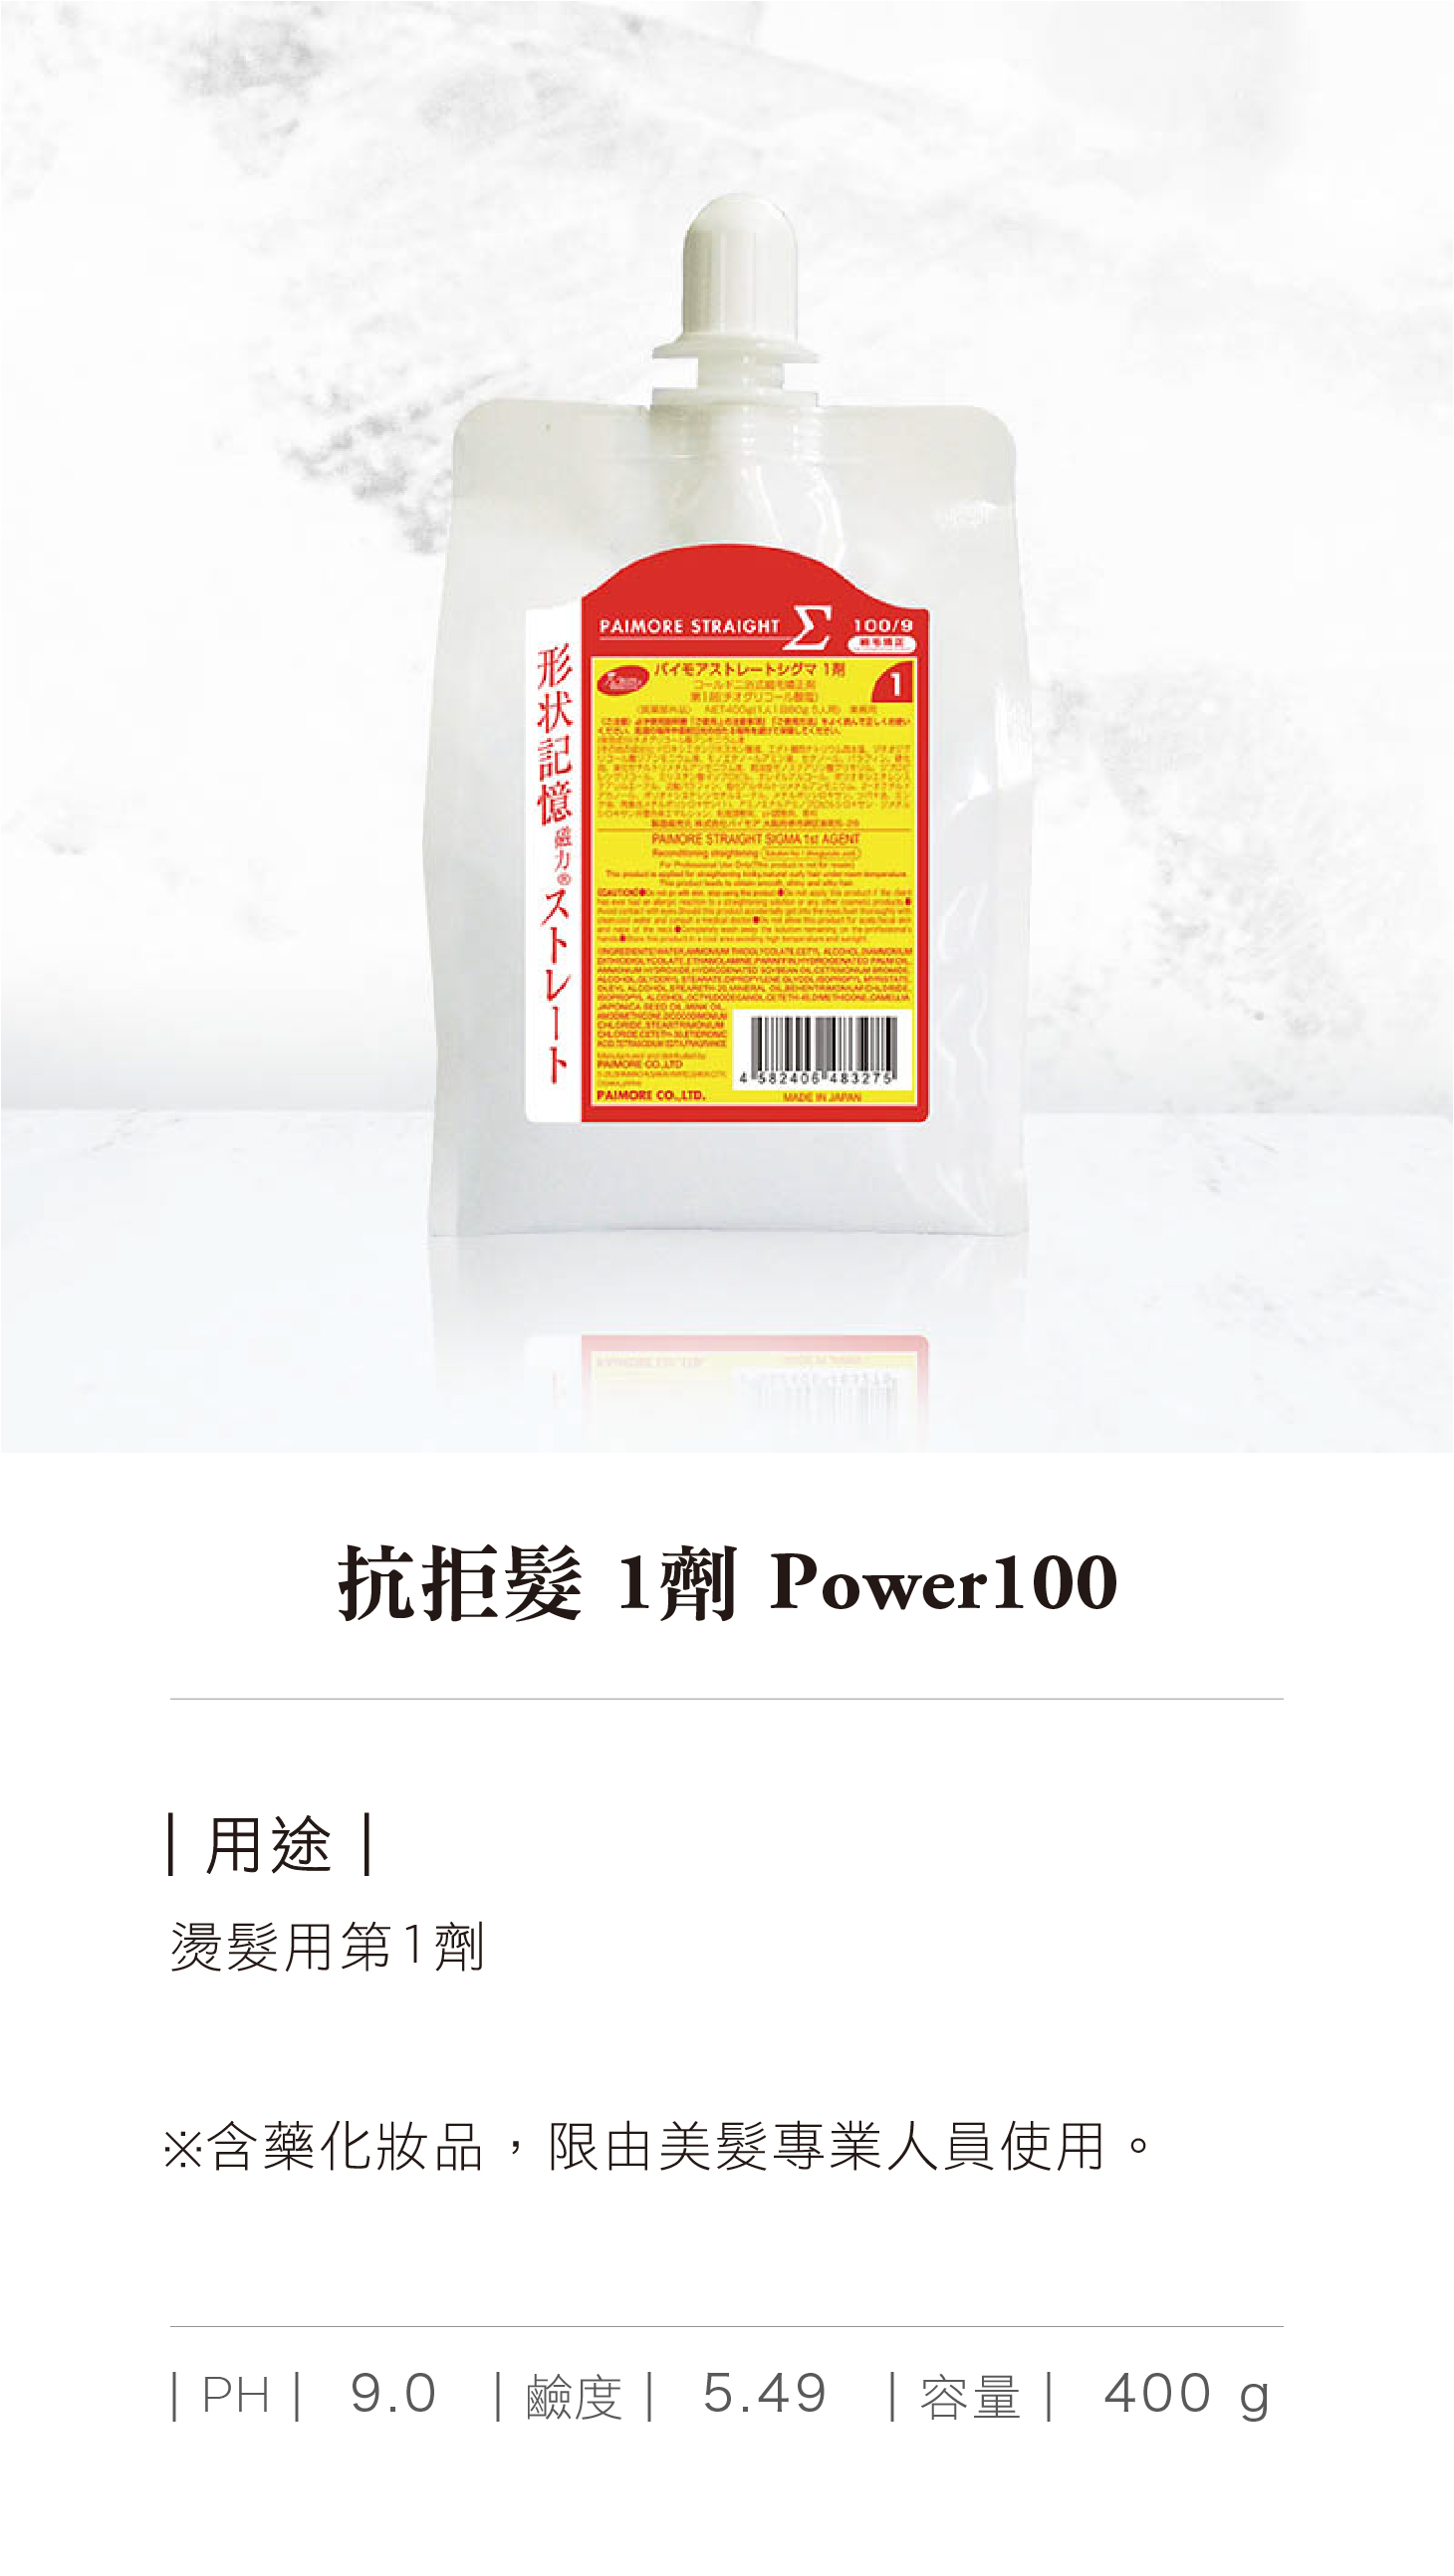 抗拒髮 1 劑 Power100.jpg